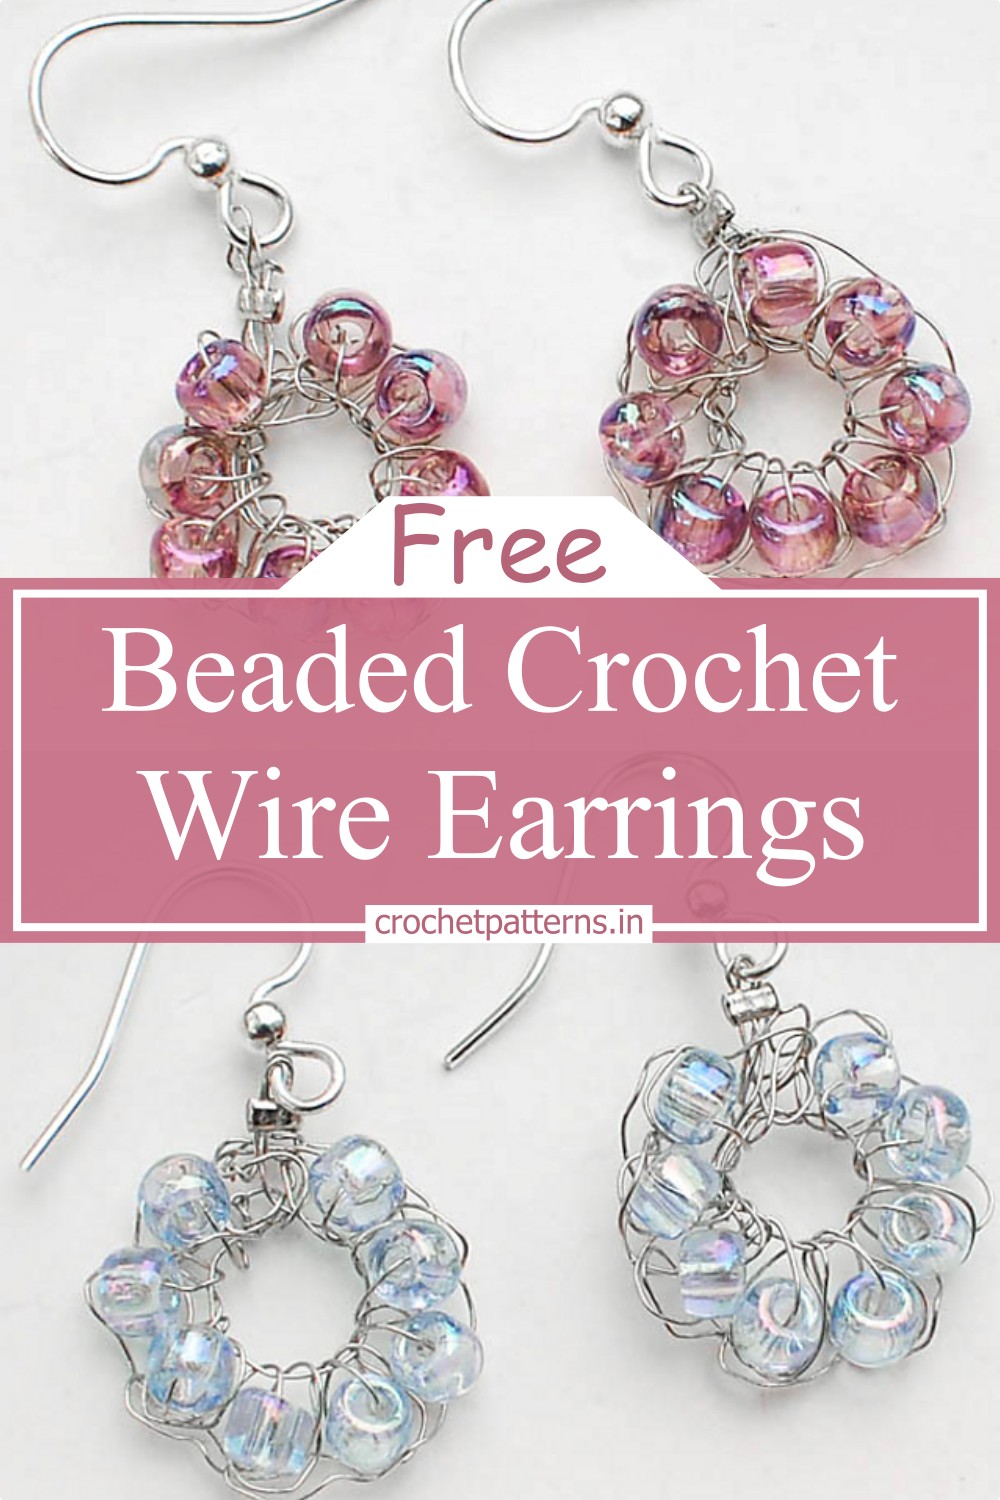 Beaded Crochet Wire Earrings